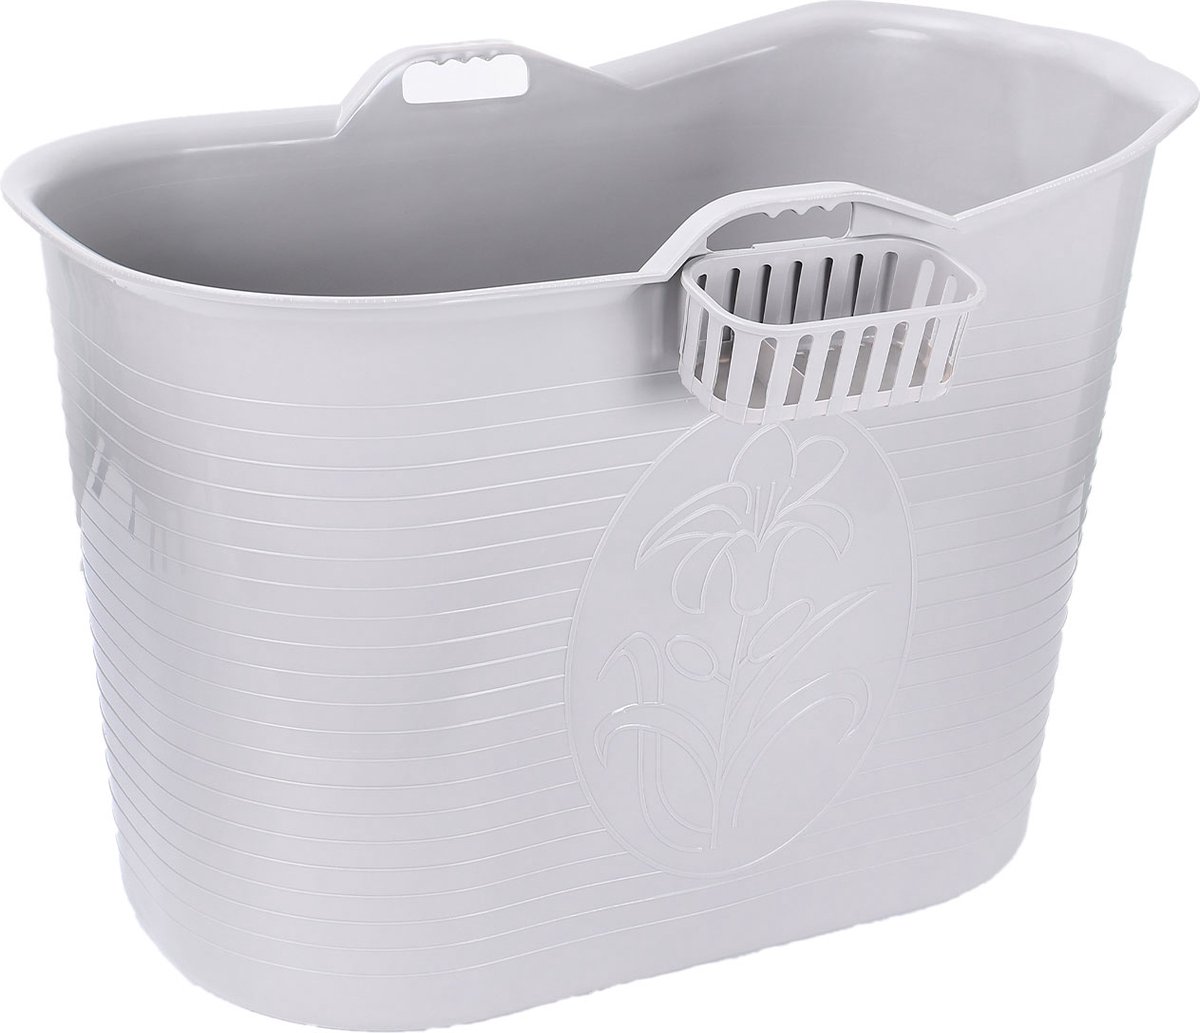 FlinQ Bath Bucket - Mobiele Badkuip voor in de Douche - Zitbad voor Volwassenen - Ook als Ijsbad / Ice Bath - Dompelbad voor Wim Hof Methode - Grijs - 185L - FlinQ